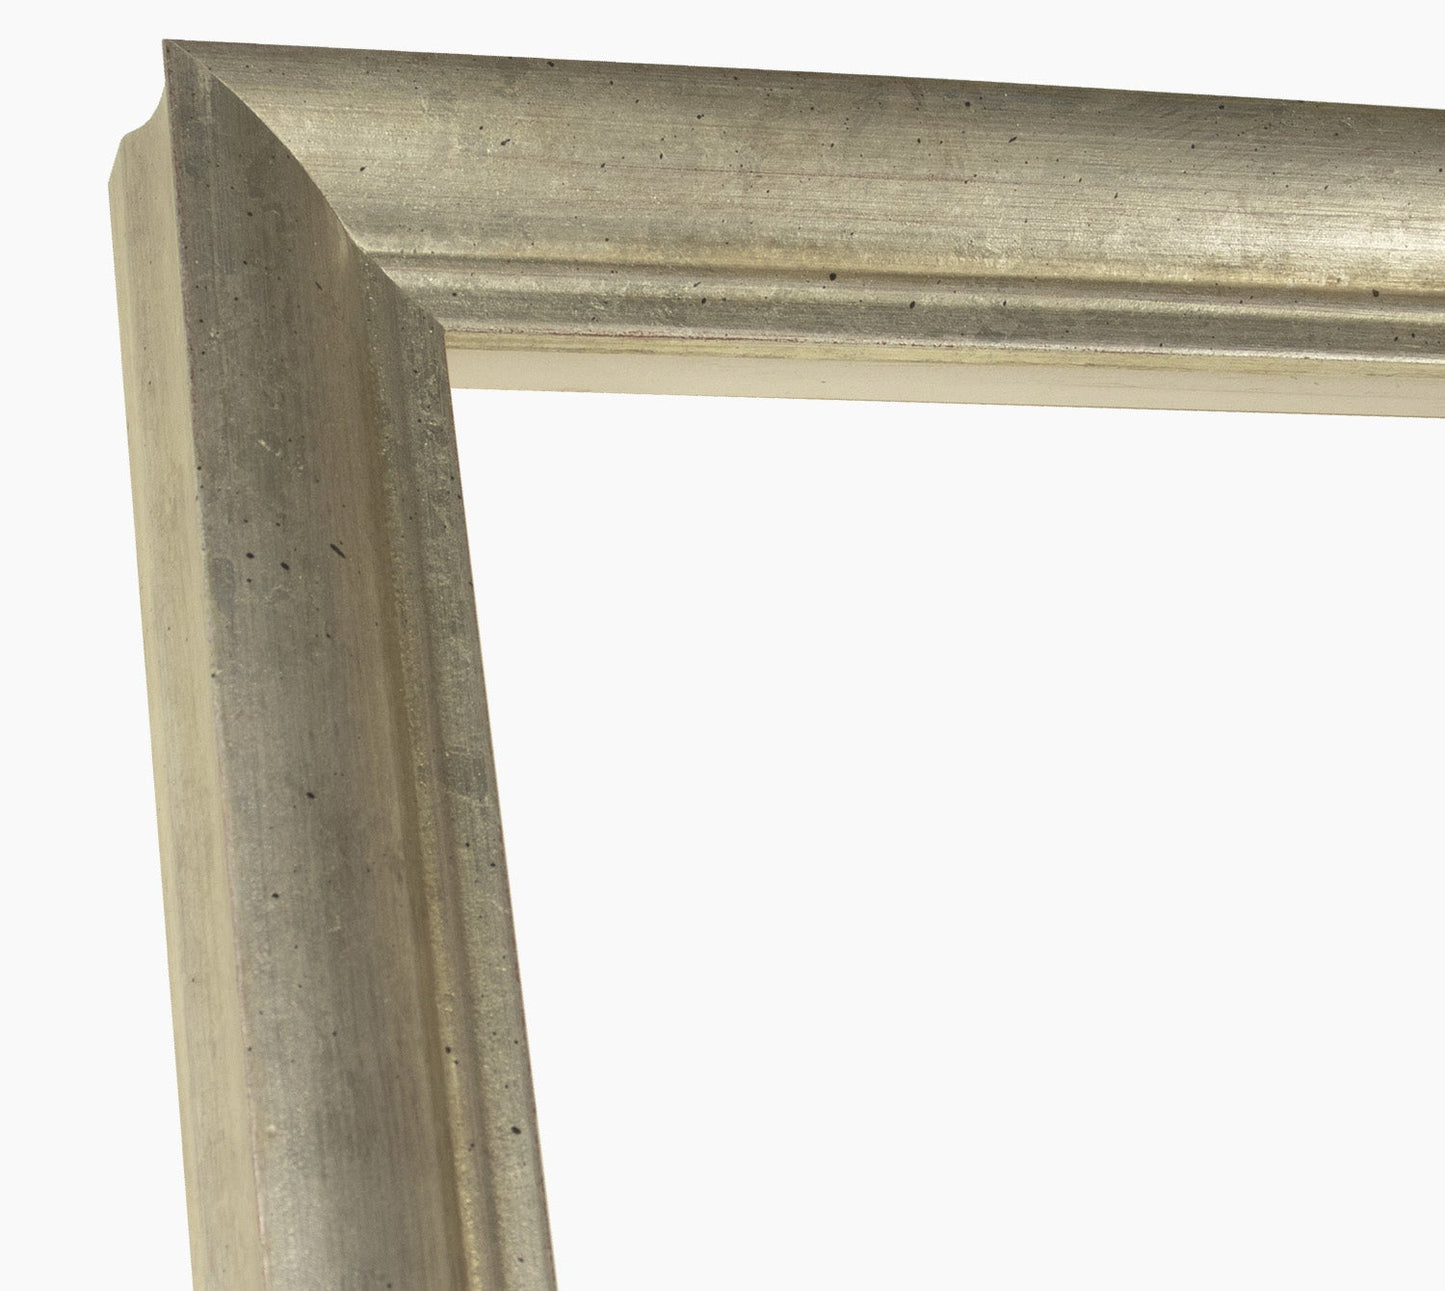 Aste per cornici in legno in foglia argento con profilo misura 45x45 mm  Art. 227.011 – Lombarda cornici s.n.c.